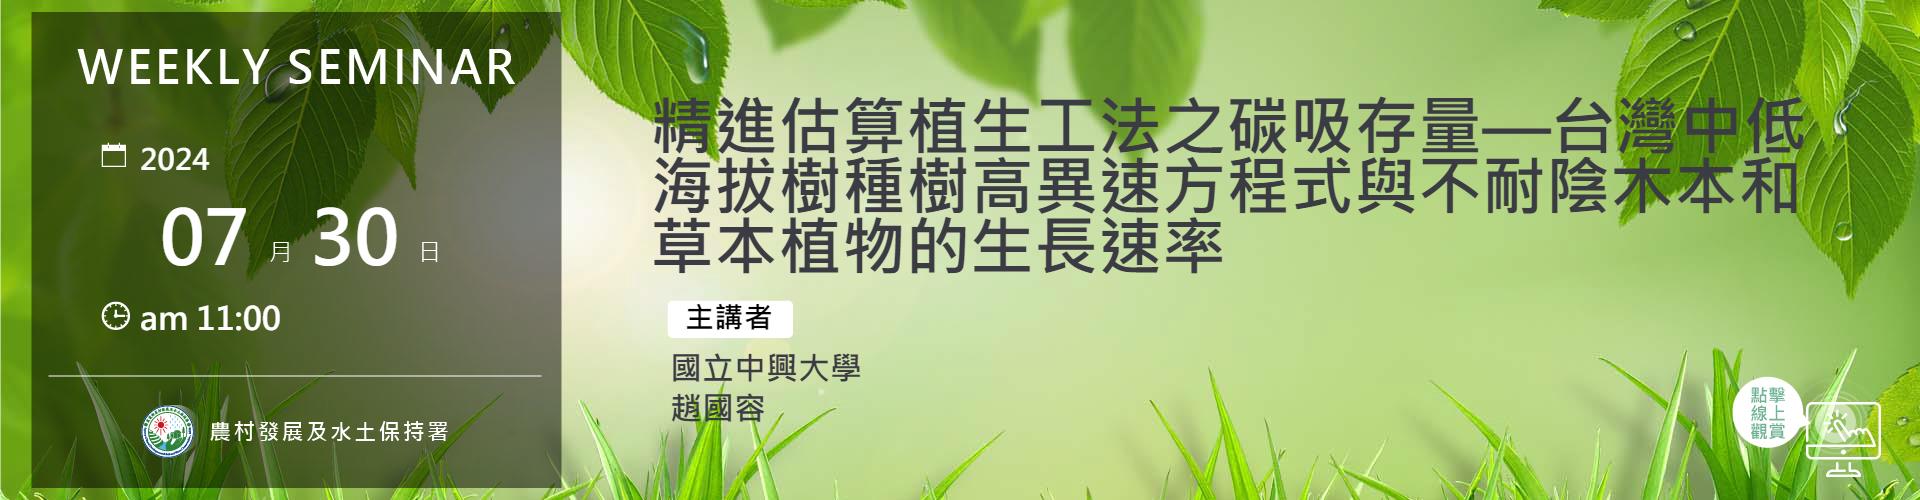 精進估算植生工法之碳吸存量—台灣中低海拔樹種樹高異速方程式與不耐陰木本和草本植物的生長速率